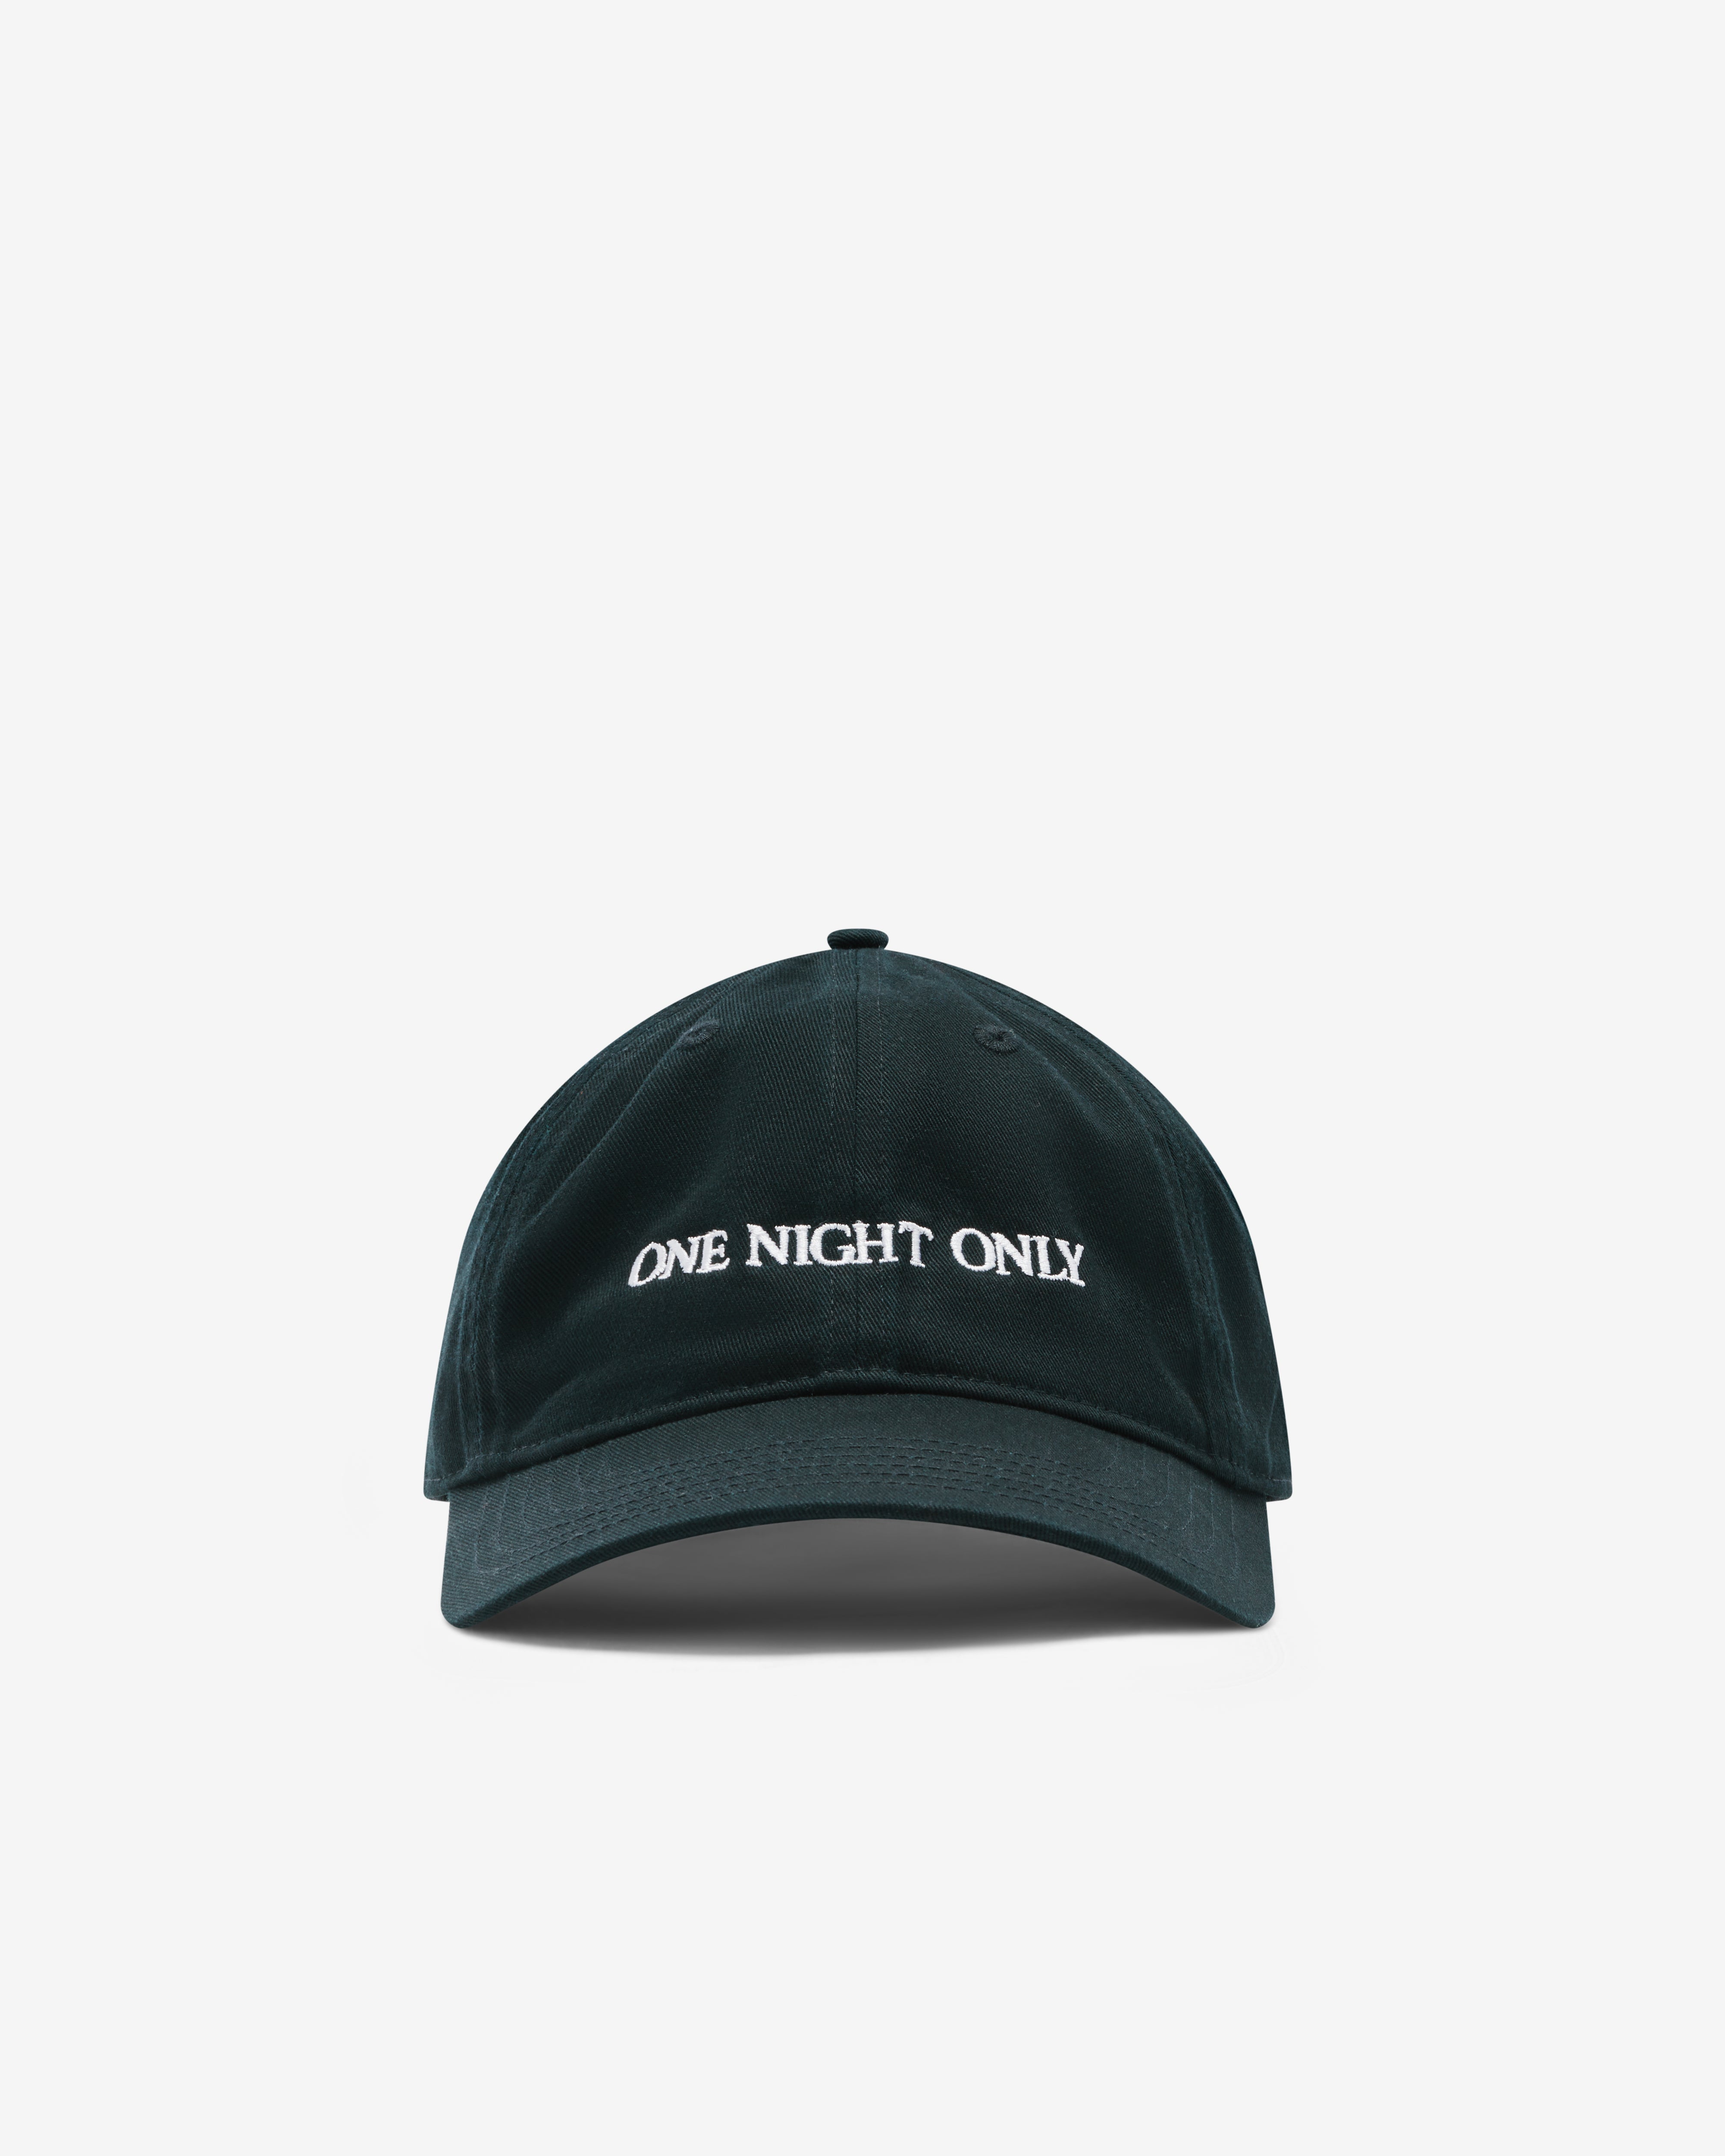 人気SALE本物保証【新品】IDEA BOOKS LTD CAP 『ONE NIGHT ONLY』 帽子